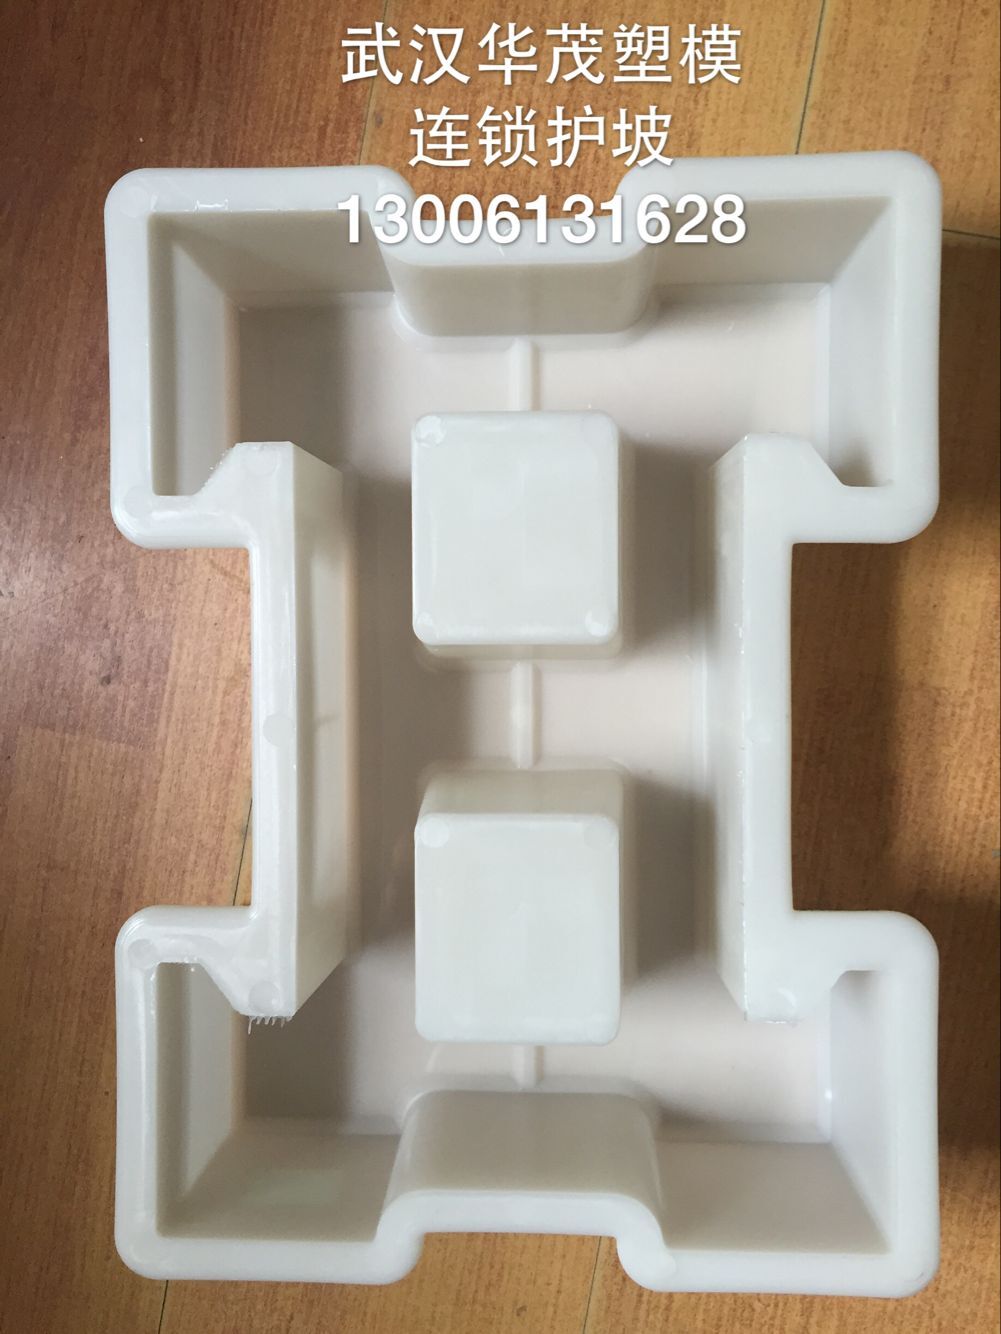 湖北连锁护坡水利塑料模具厂家-武汉连锁护坡水利塑模经销商